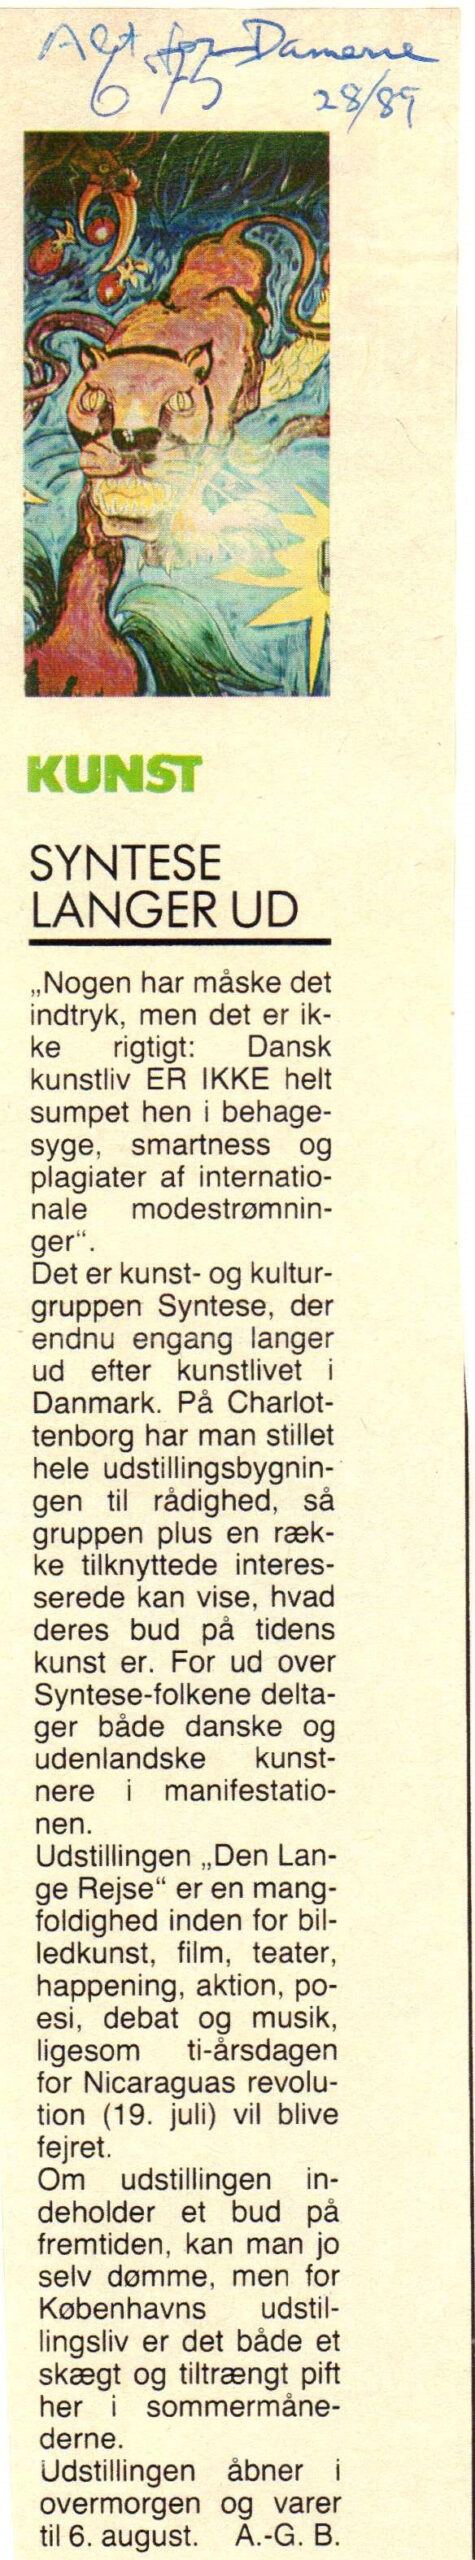 Syntese langer ud. Omtale (Den lange rejse. Charlottenborg 1989, København). A. G.B. Alt for damerne.